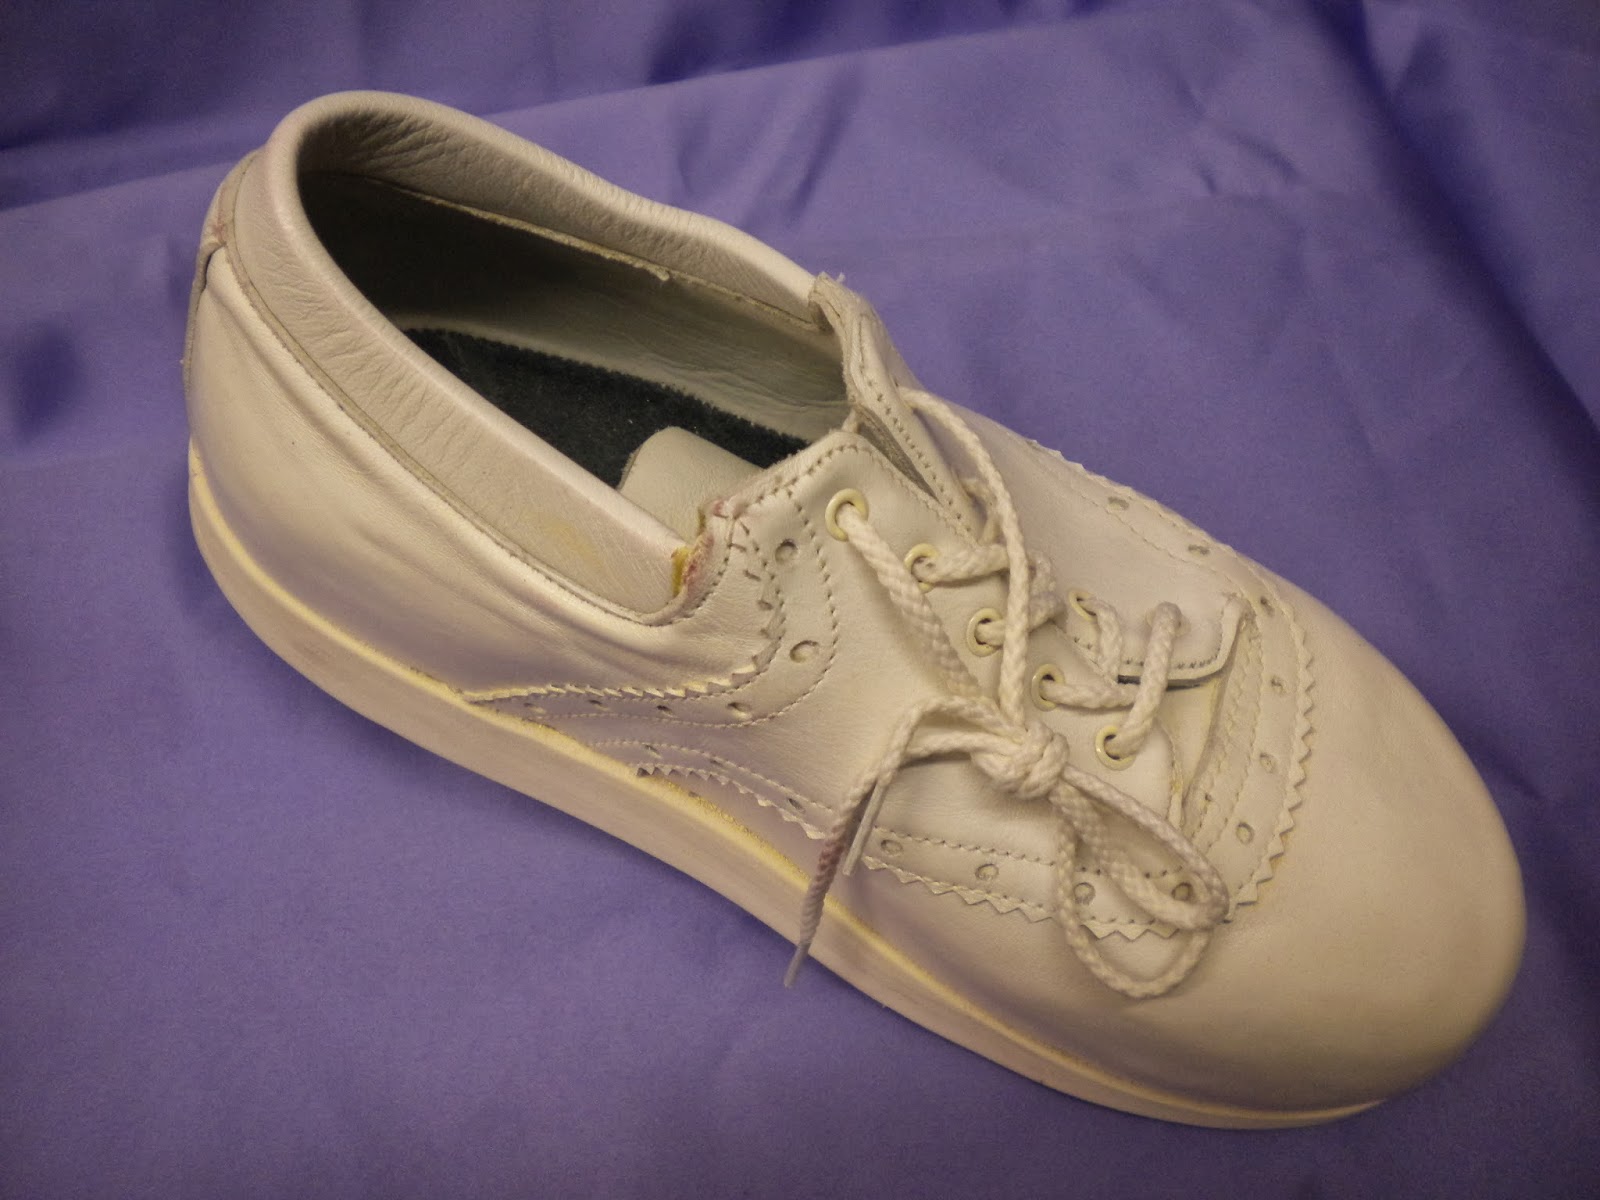 Long Island Comfort Shoes & Pedorthics : Orthotics & Custom Shoes